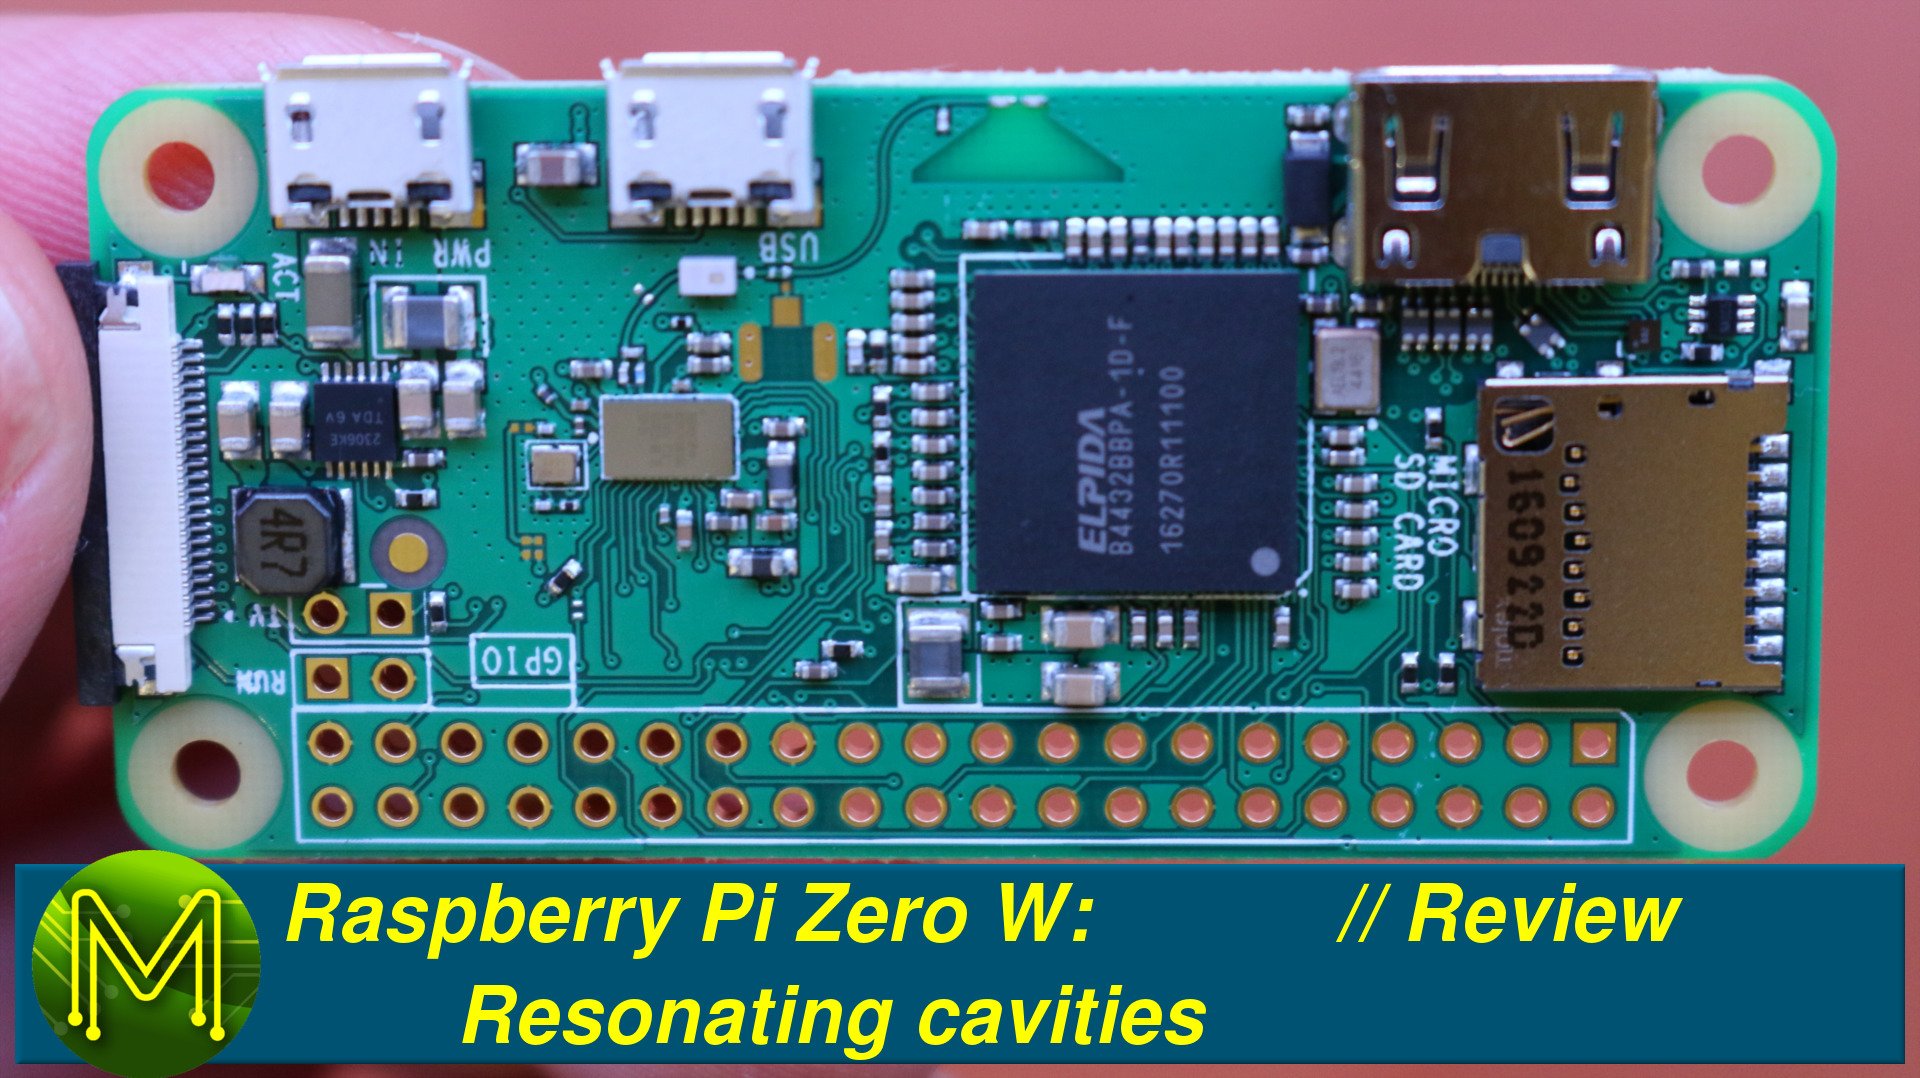 Raspberry Pi Zero W: Resonating cavities // Review